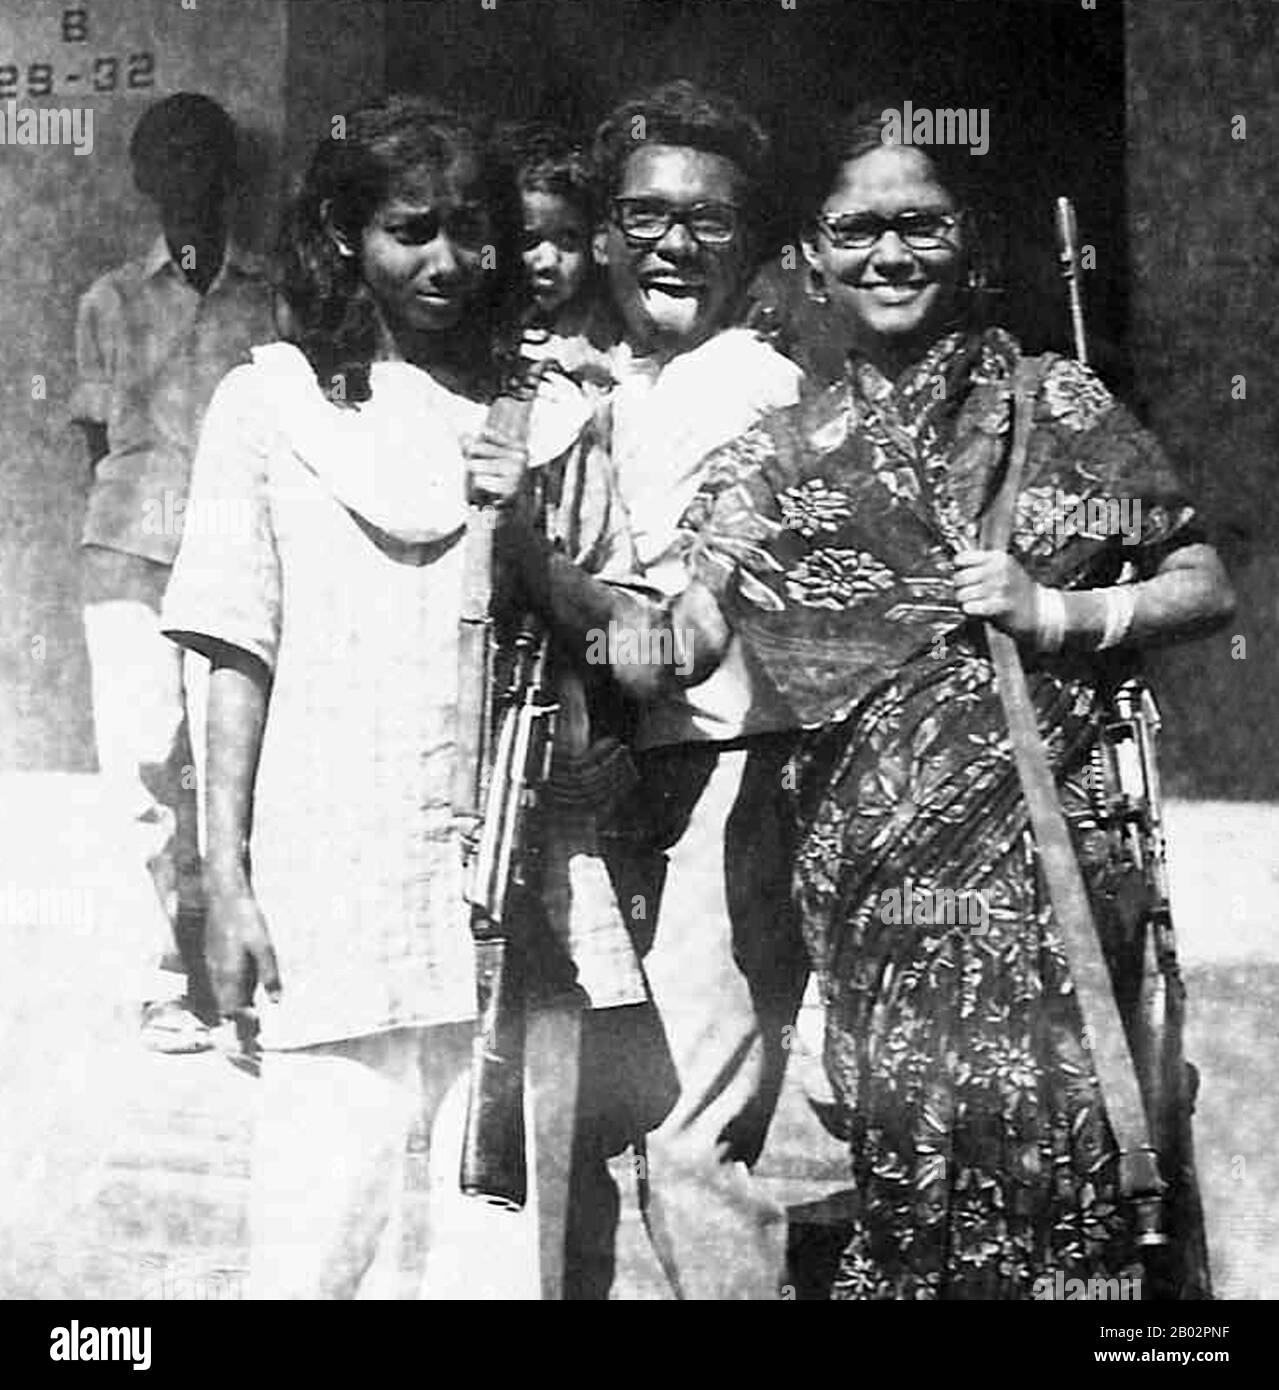 Le Mukti Bahini (Bengali: 'Armée de libération') était la guérilla et les forces armées régulières du Bangladesh pendant la guerre de libération de 1971 contre le Pakistan. Il comprenait la défection des régiments bengali de l'armée pakistanaise, des paramilitaires et de la police, ainsi que des milliers de civils bengali, en particulier des étudiants et des militants politiques. Ses membres sont connus au Bangladesh sous le nom de Freedom Fighters. Banque D'Images